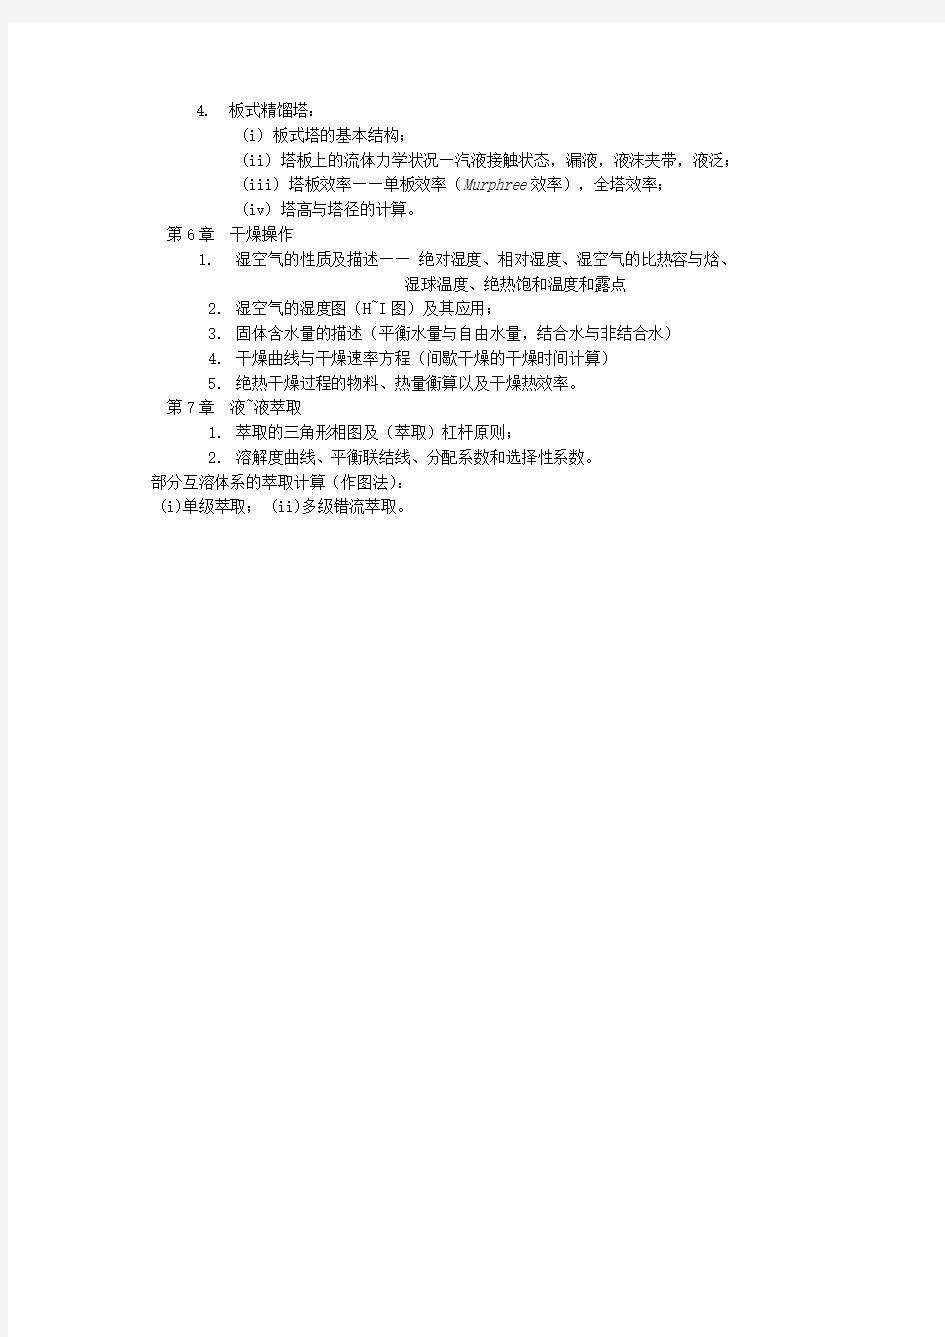 2017年上海大学 853化工原理   考试大纲(初试)